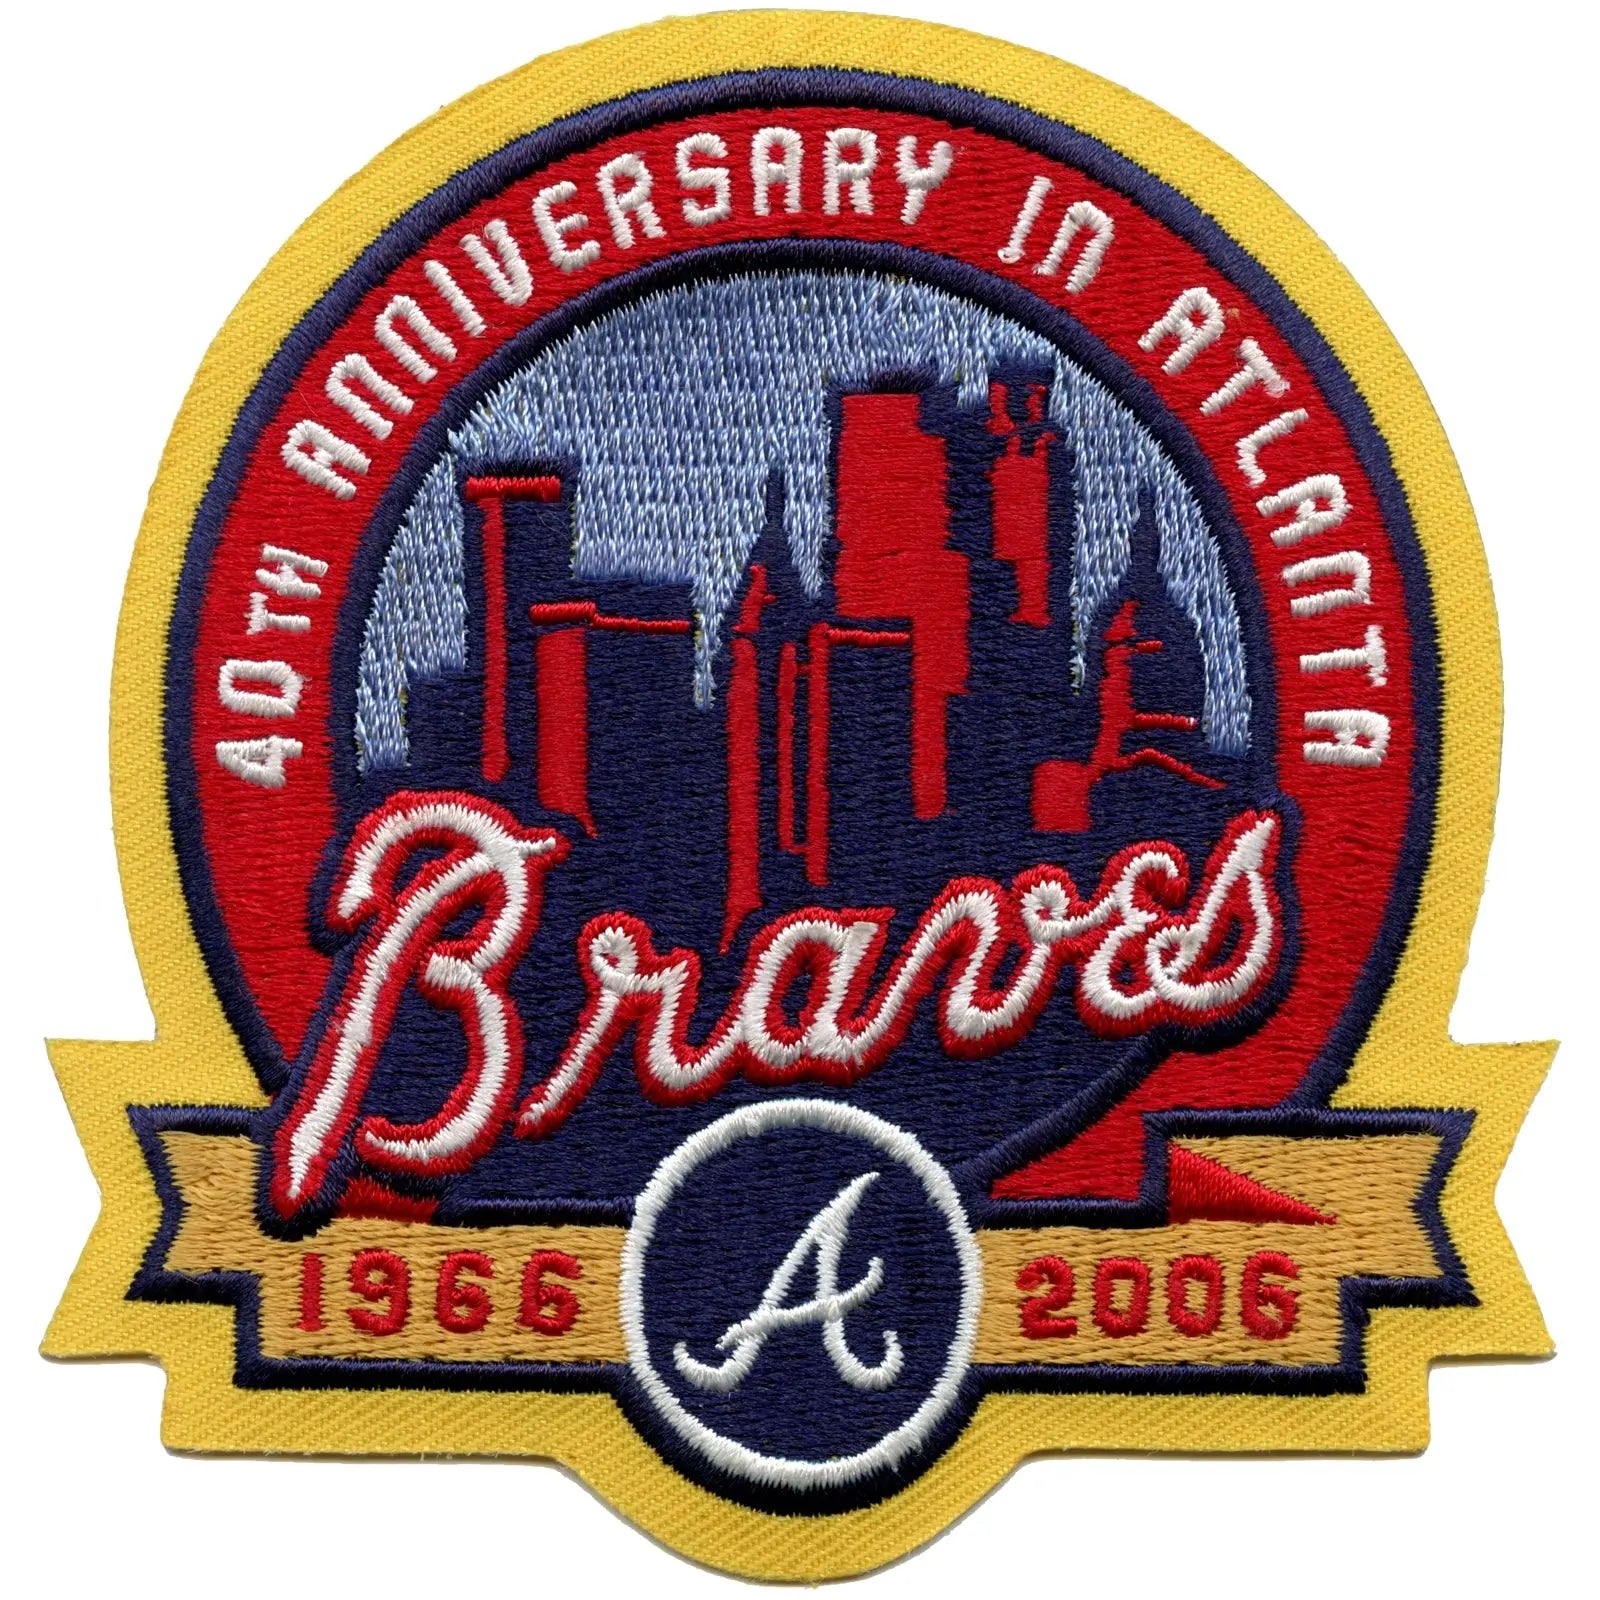 Atlanta Braves Alternate Logo History